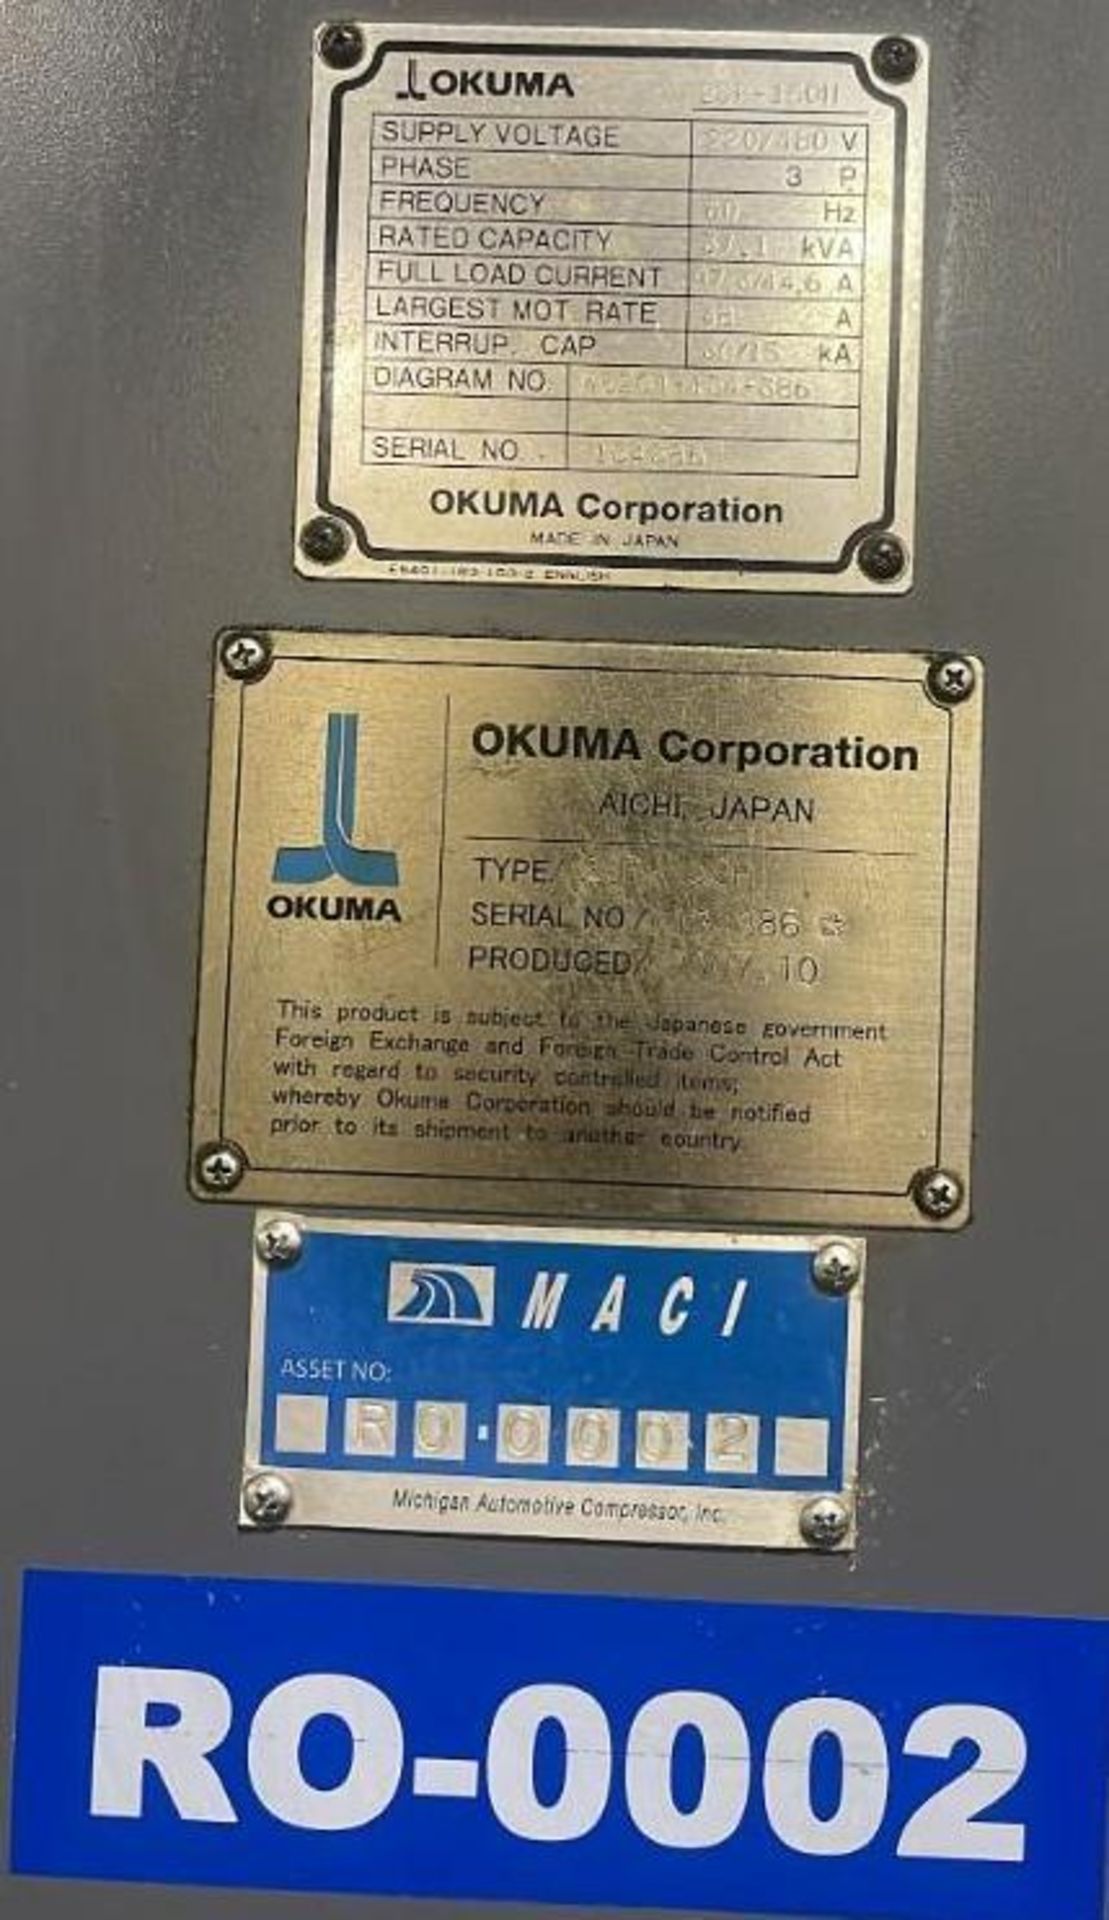 2007 Okuma 2SP-150H Twin Spindle CNC Lathe - Image 2 of 7